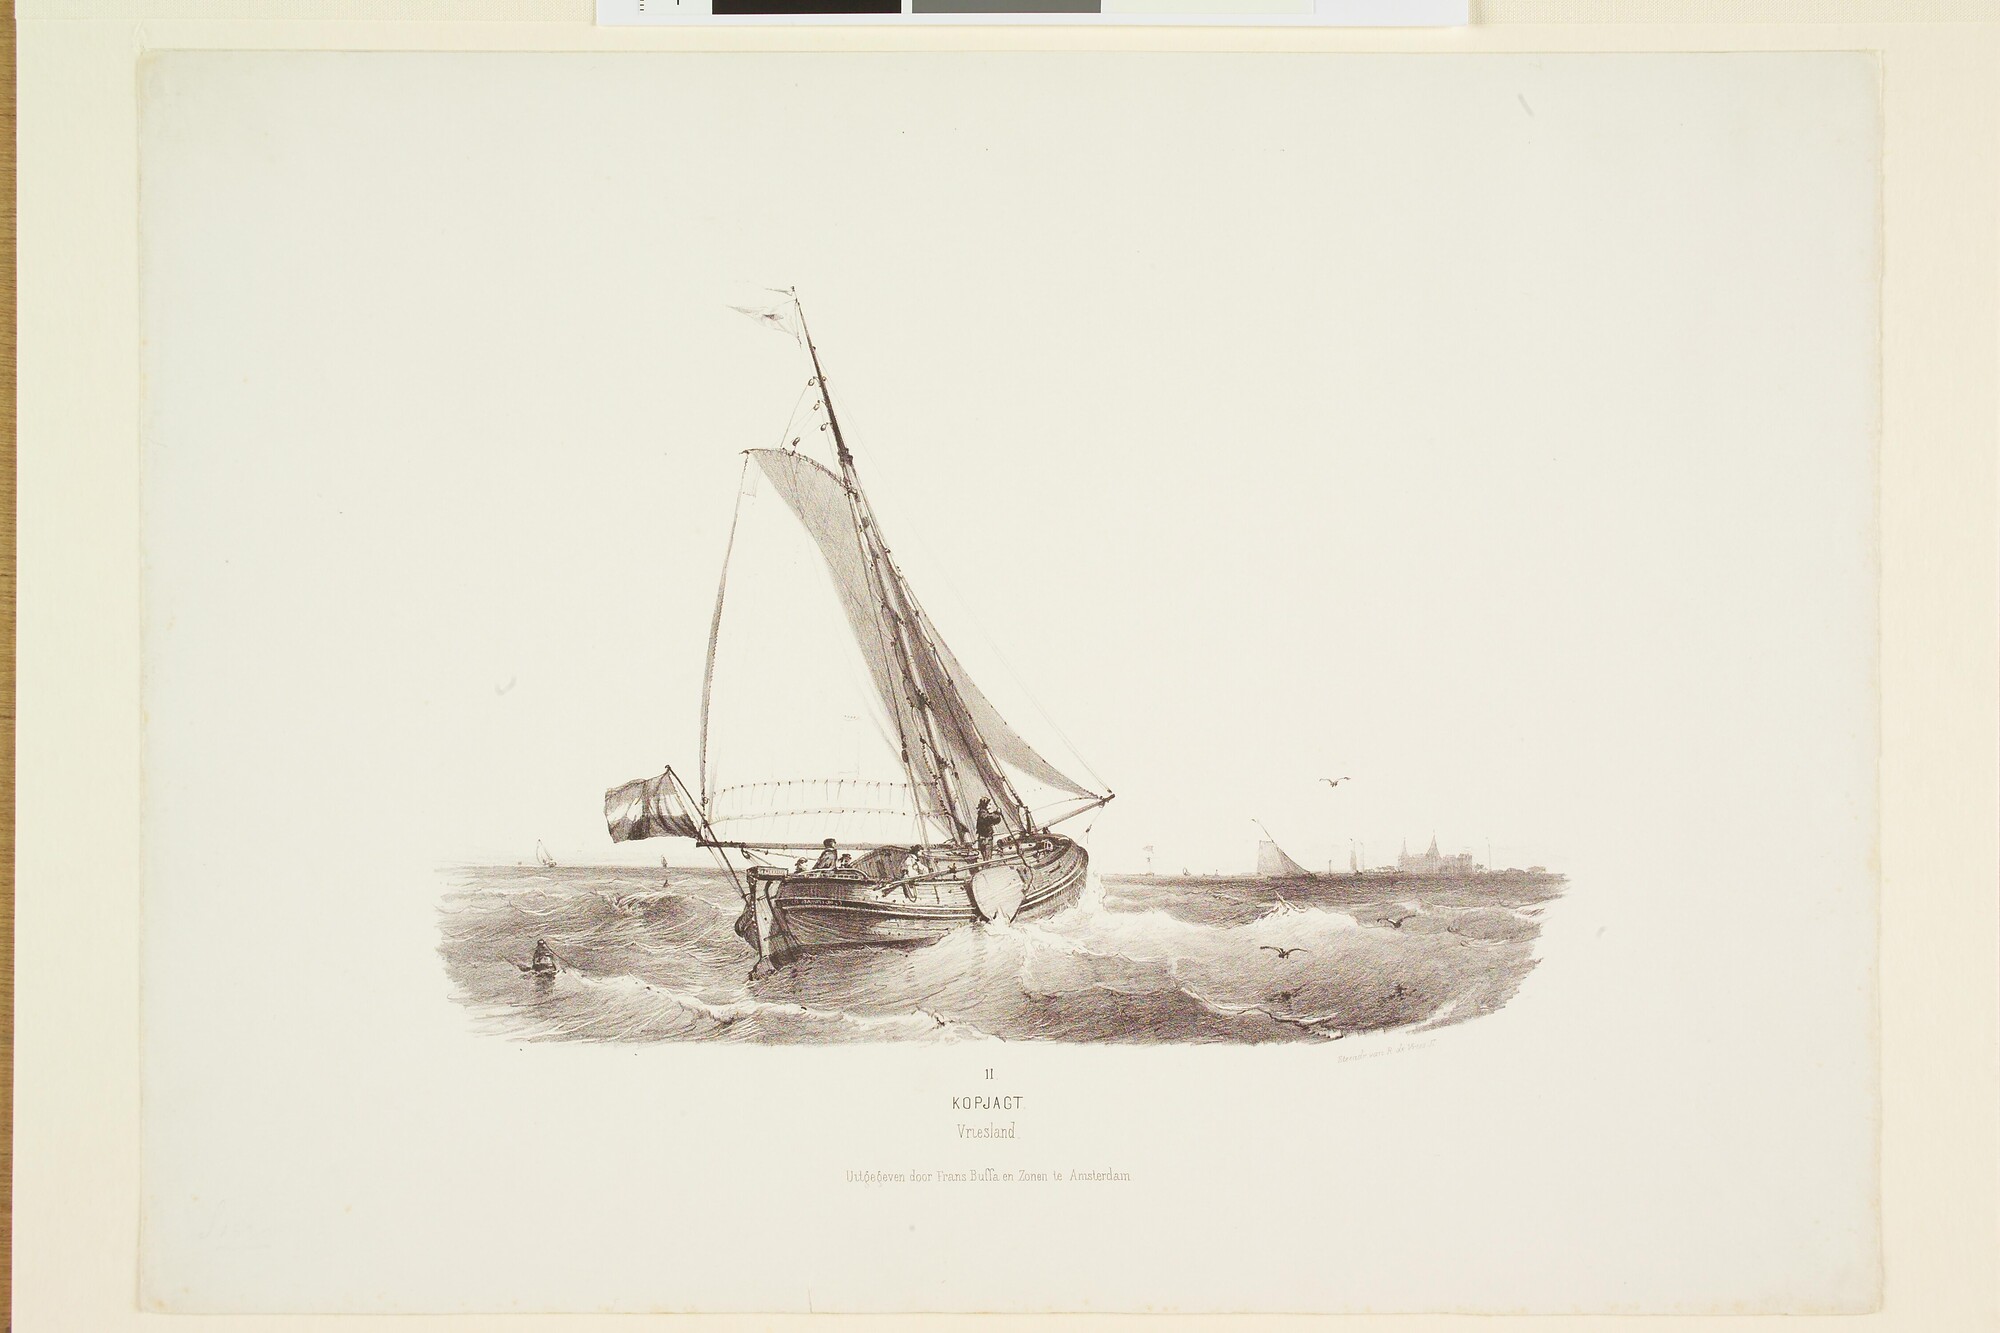 S.1330(11); Prentserie "Studien van Hollandsche Schepen", nummer 11: een kopjacht op open water; prent